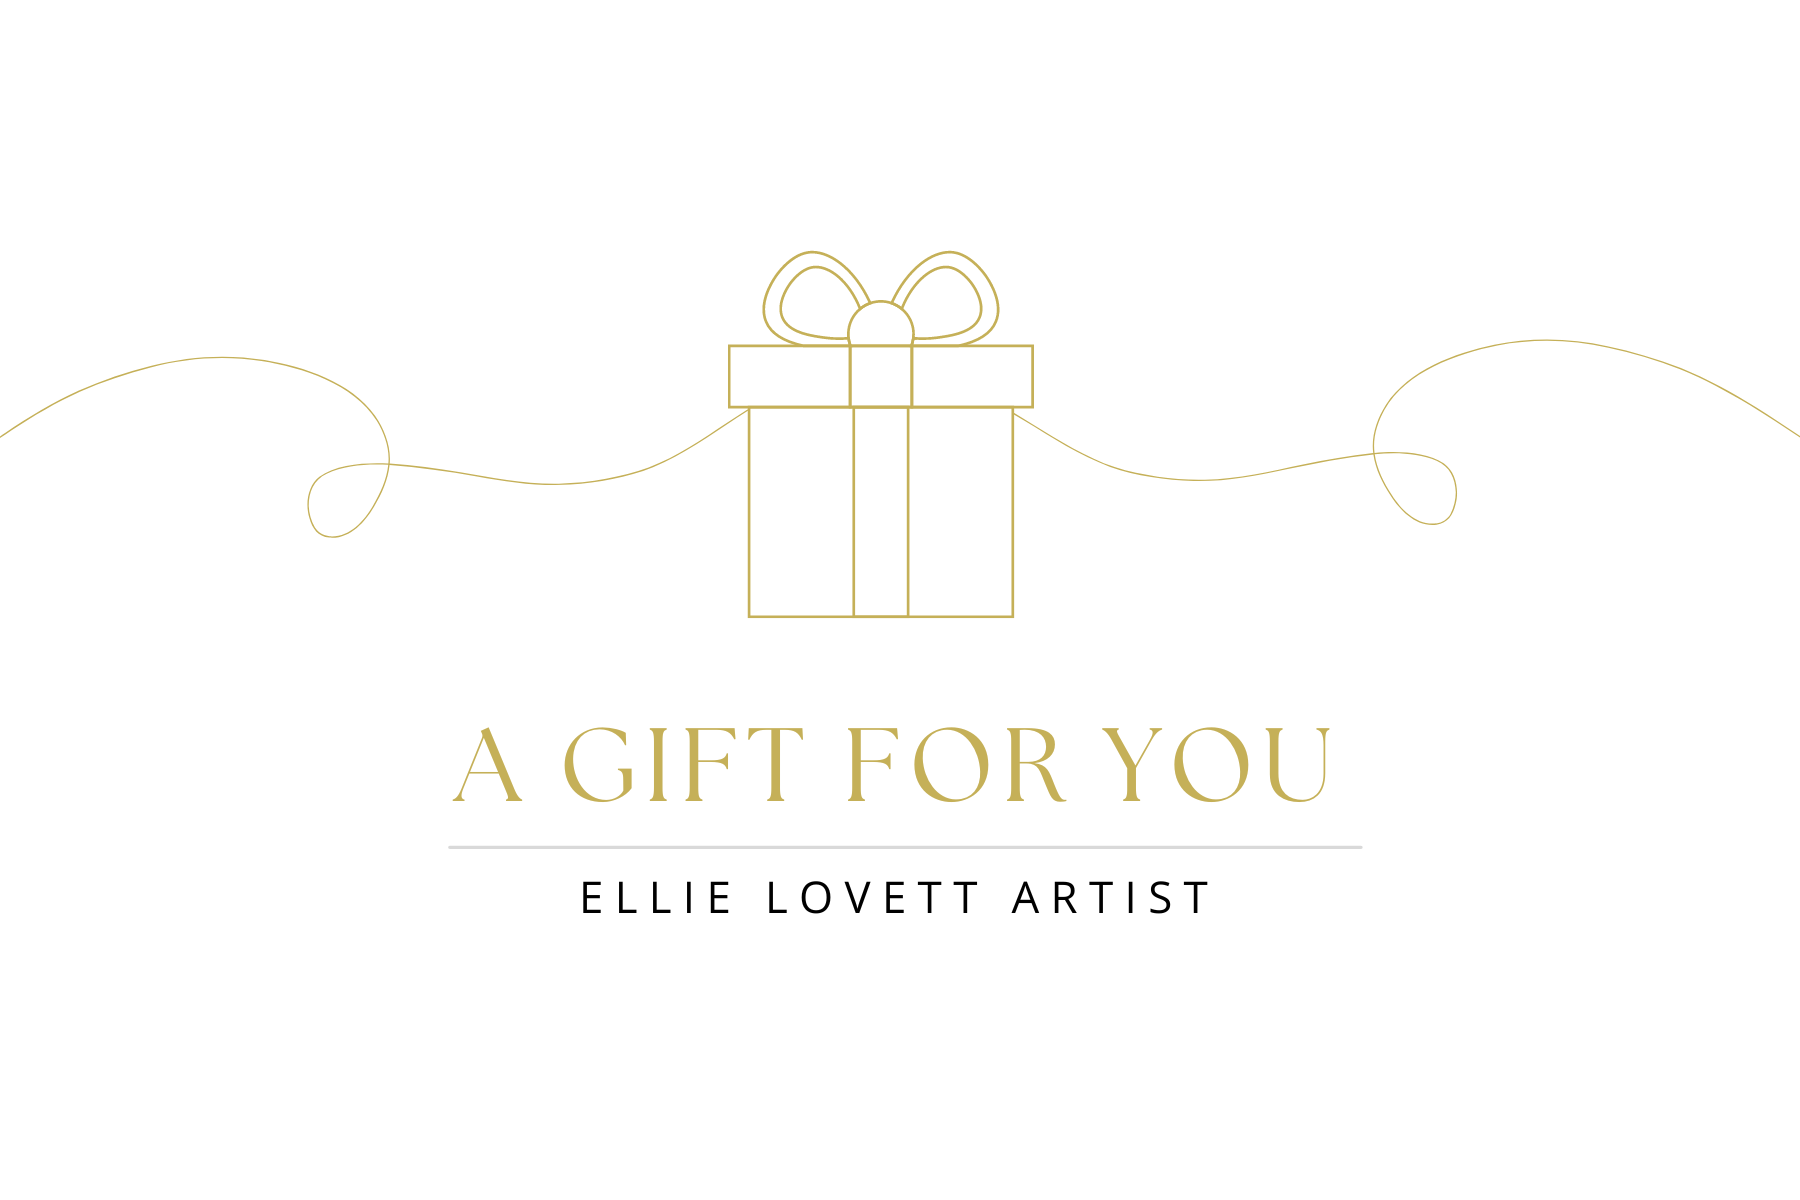 Ellie Lovett Artist Gift Card